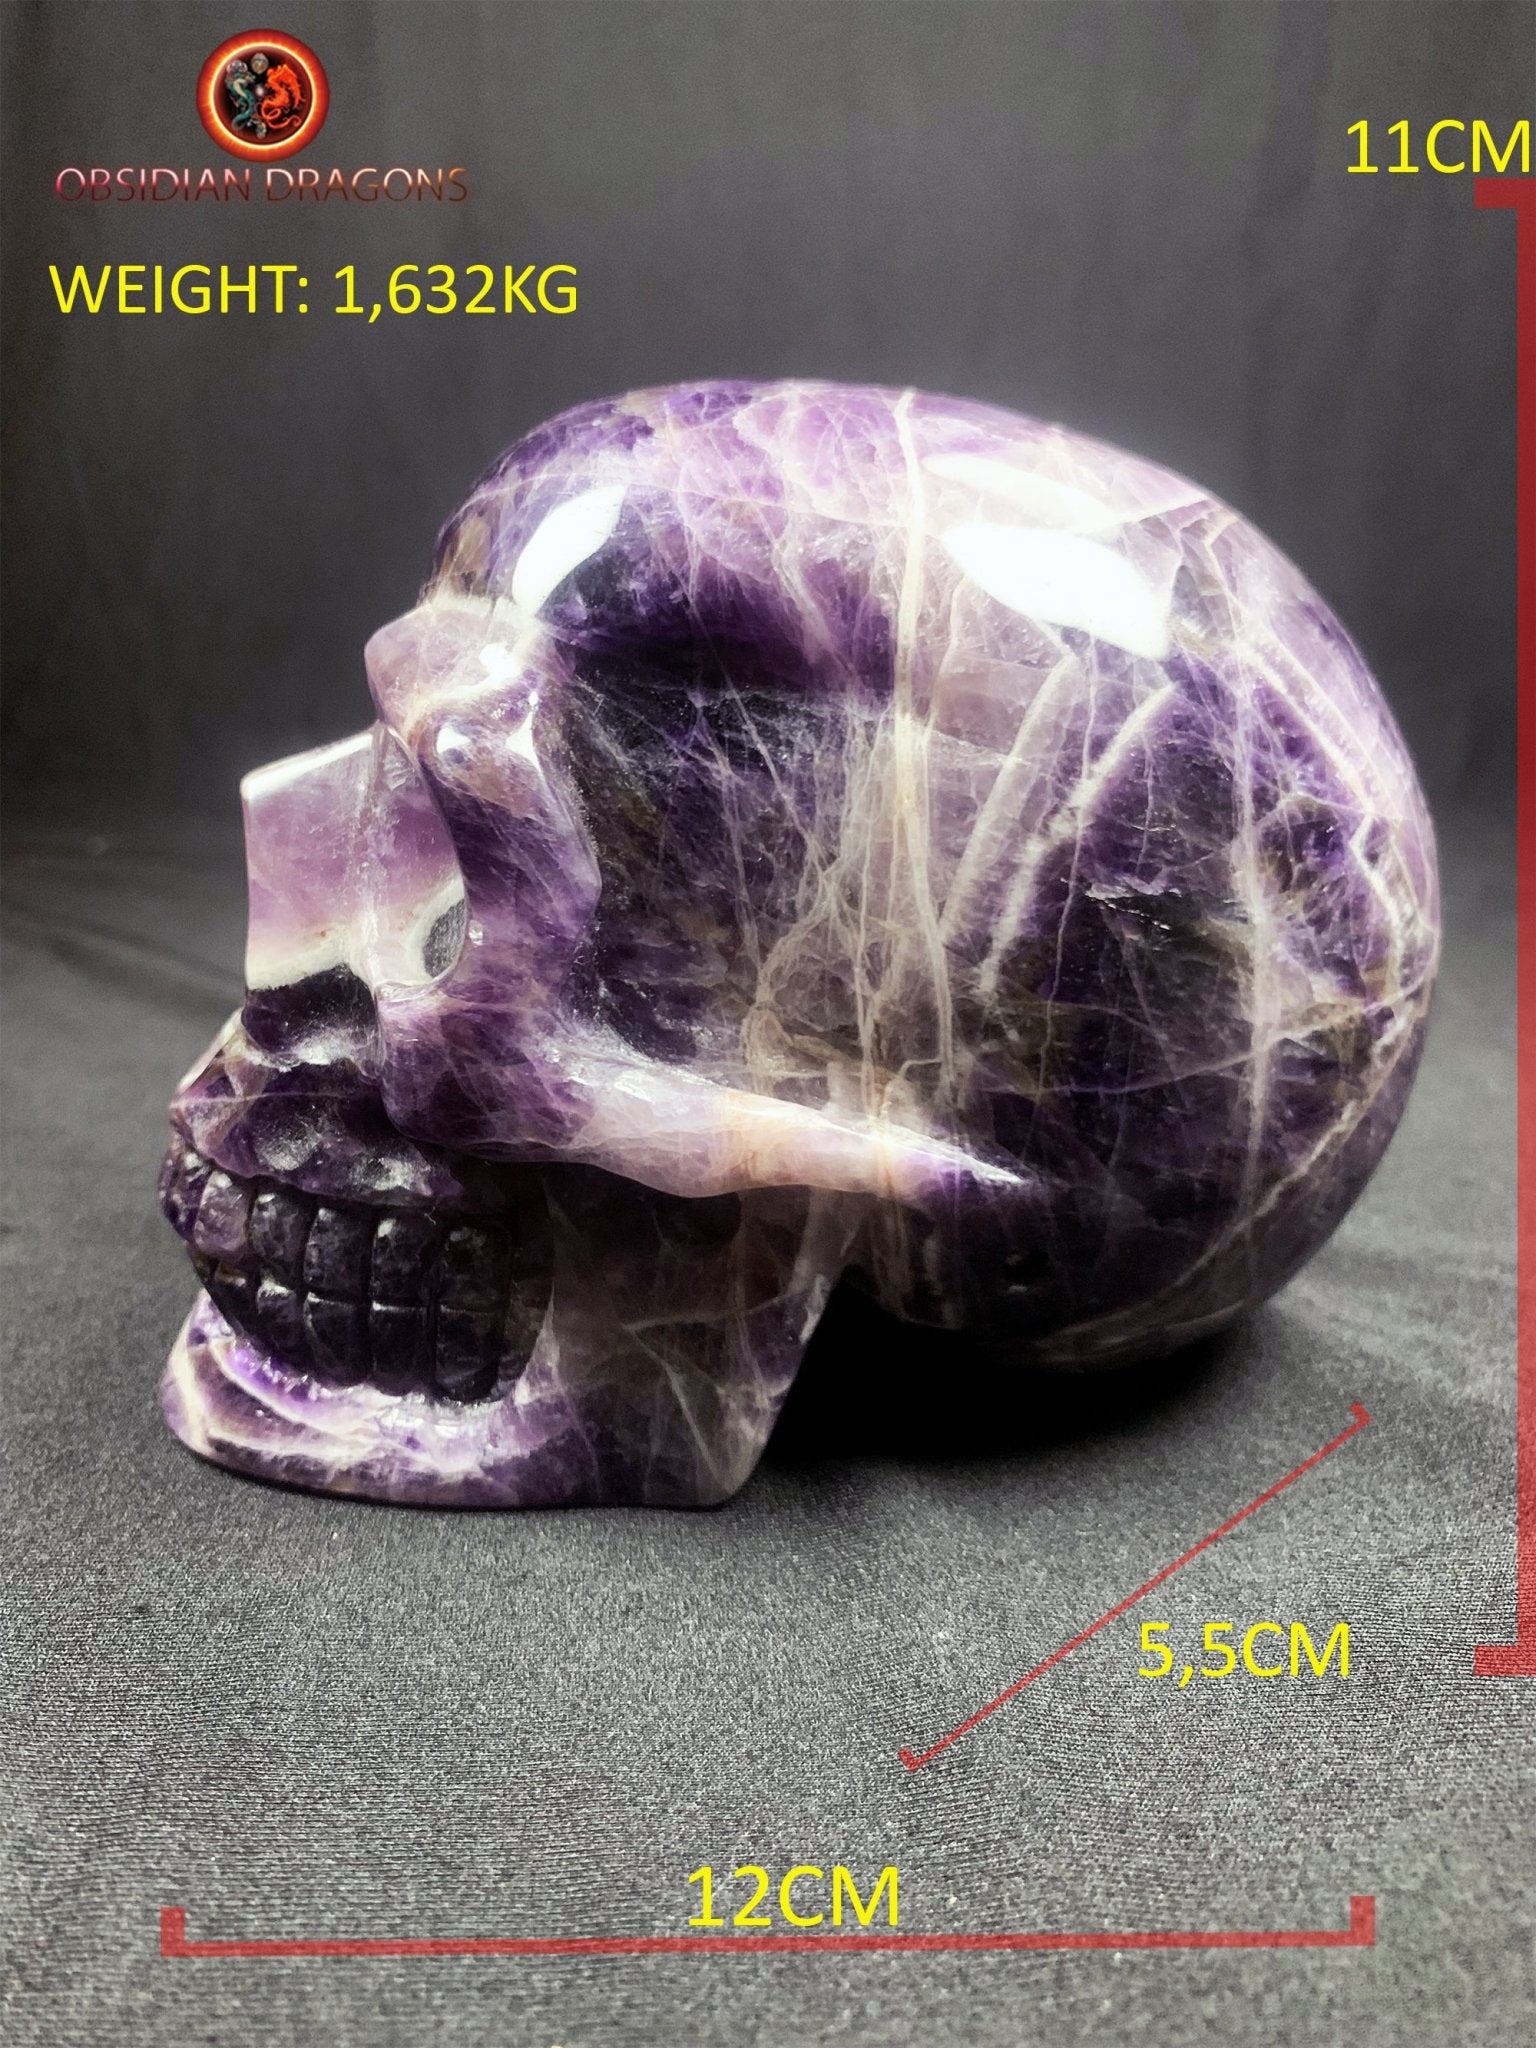 Grand crâne de cristal en améthyste- unique